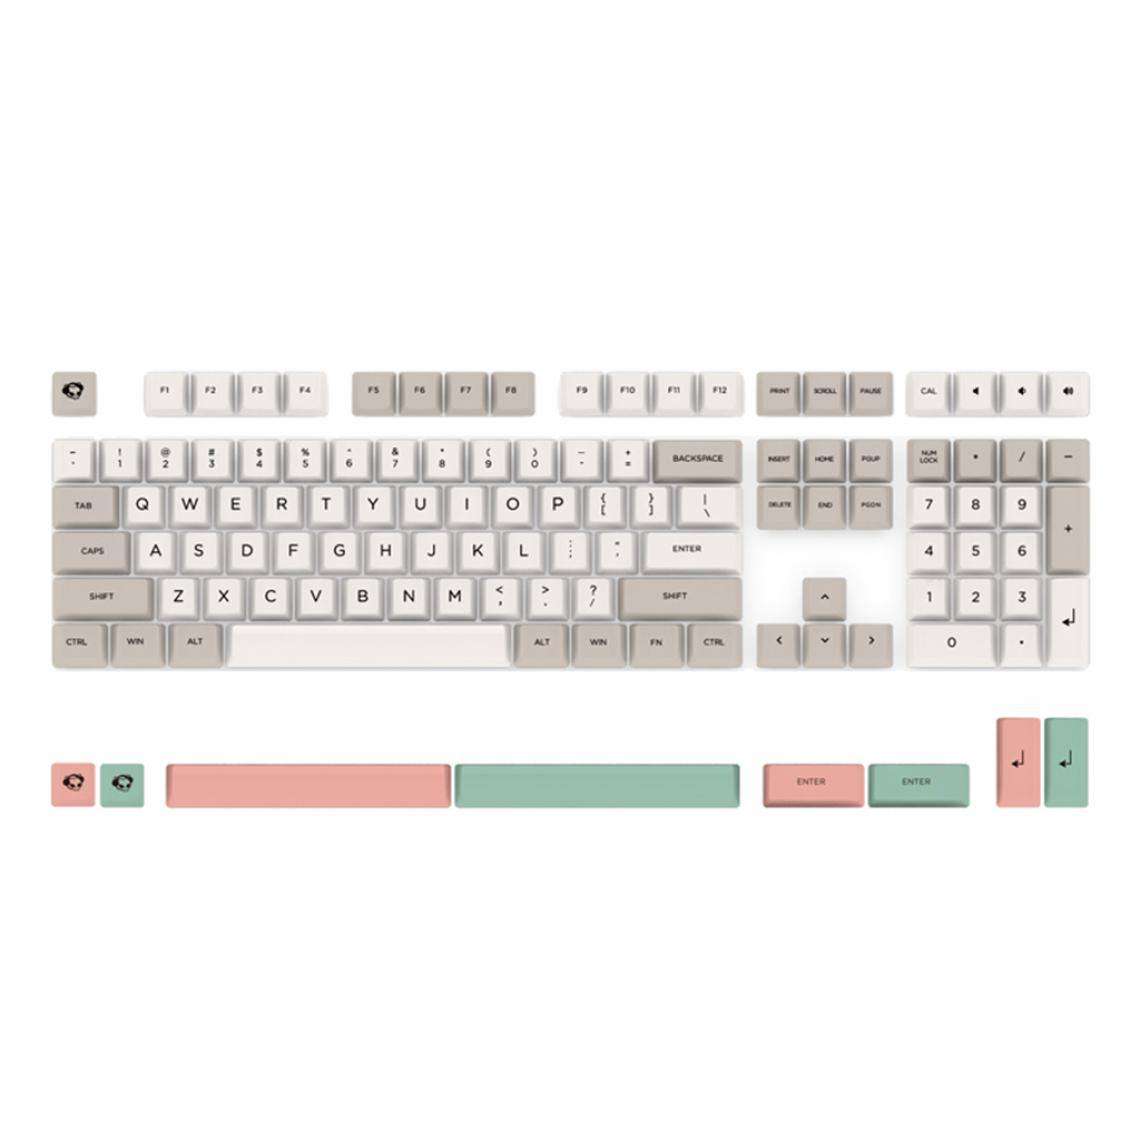 marque generique - Keycaps Key Caps Set pour clavier mécanique Keycaps Rose - Clavier